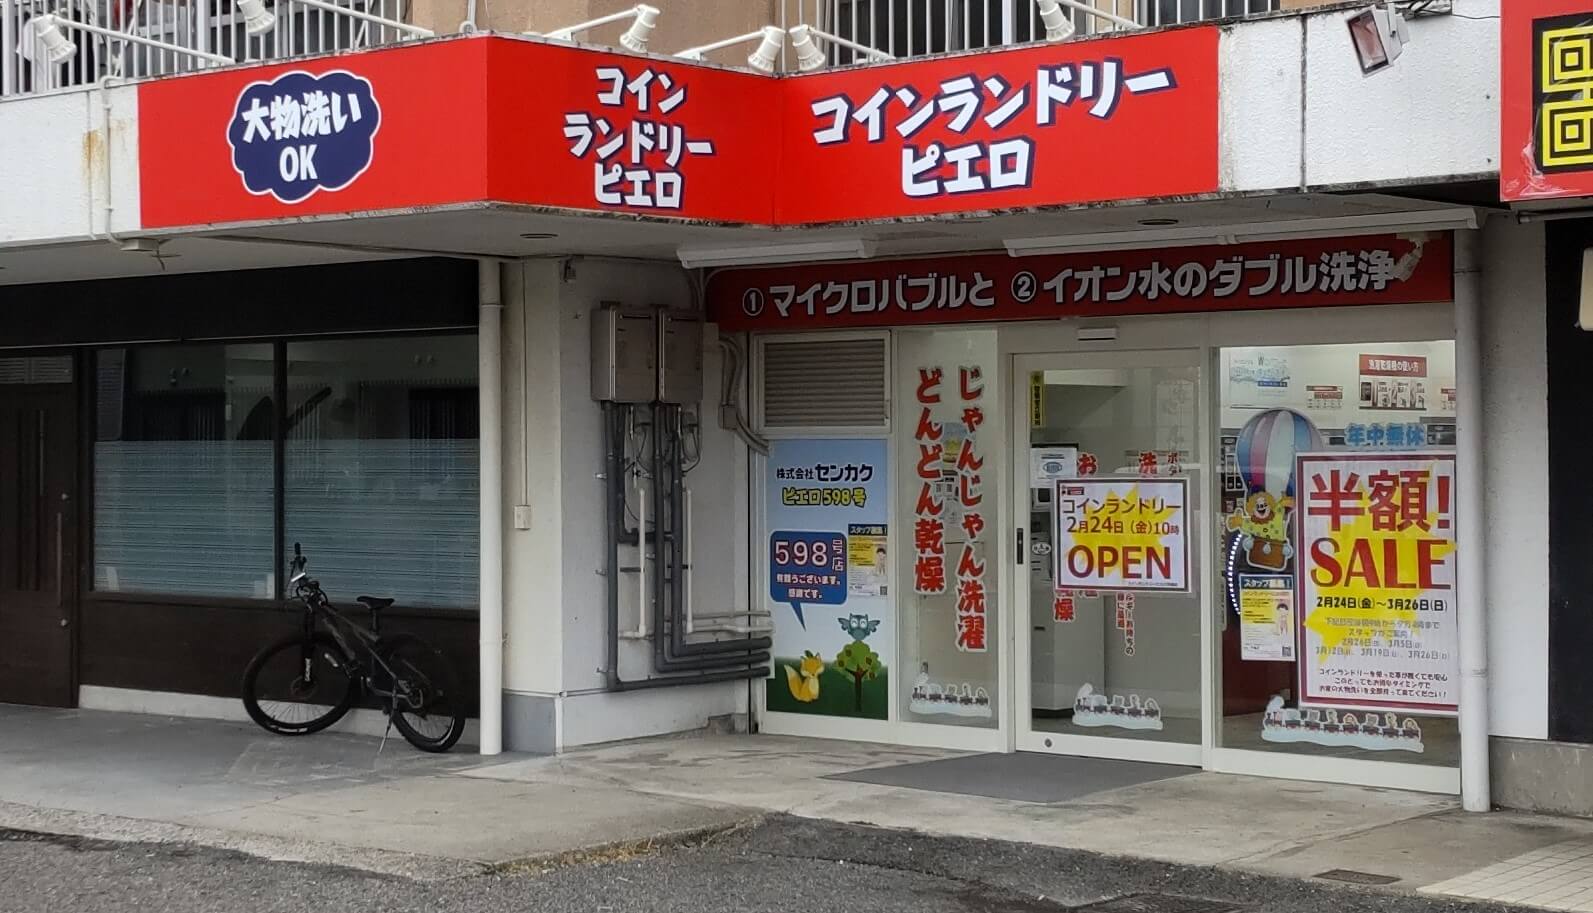 コインランドリー/ピエロ 598号 芋島店の写真